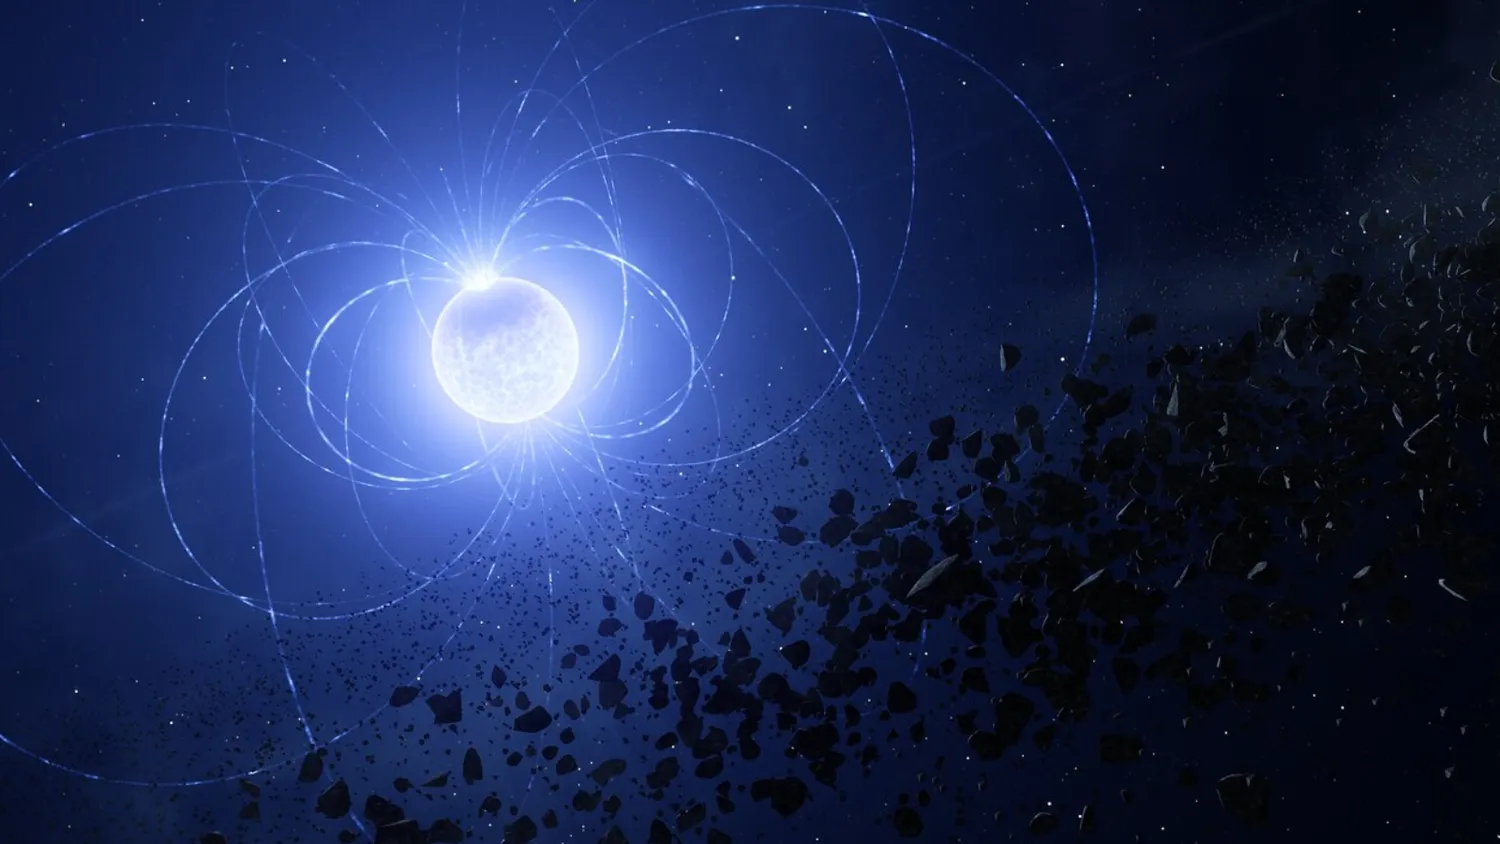 Illustration des magnetischen Weißen Zwerges WD 0816-310, bei dem Astronomen eine Narbe auf der Oberfläche gefunden haben, die darauf zurückzuführen ist, dass der Stern Planetentrümmer aufgenommen hat.